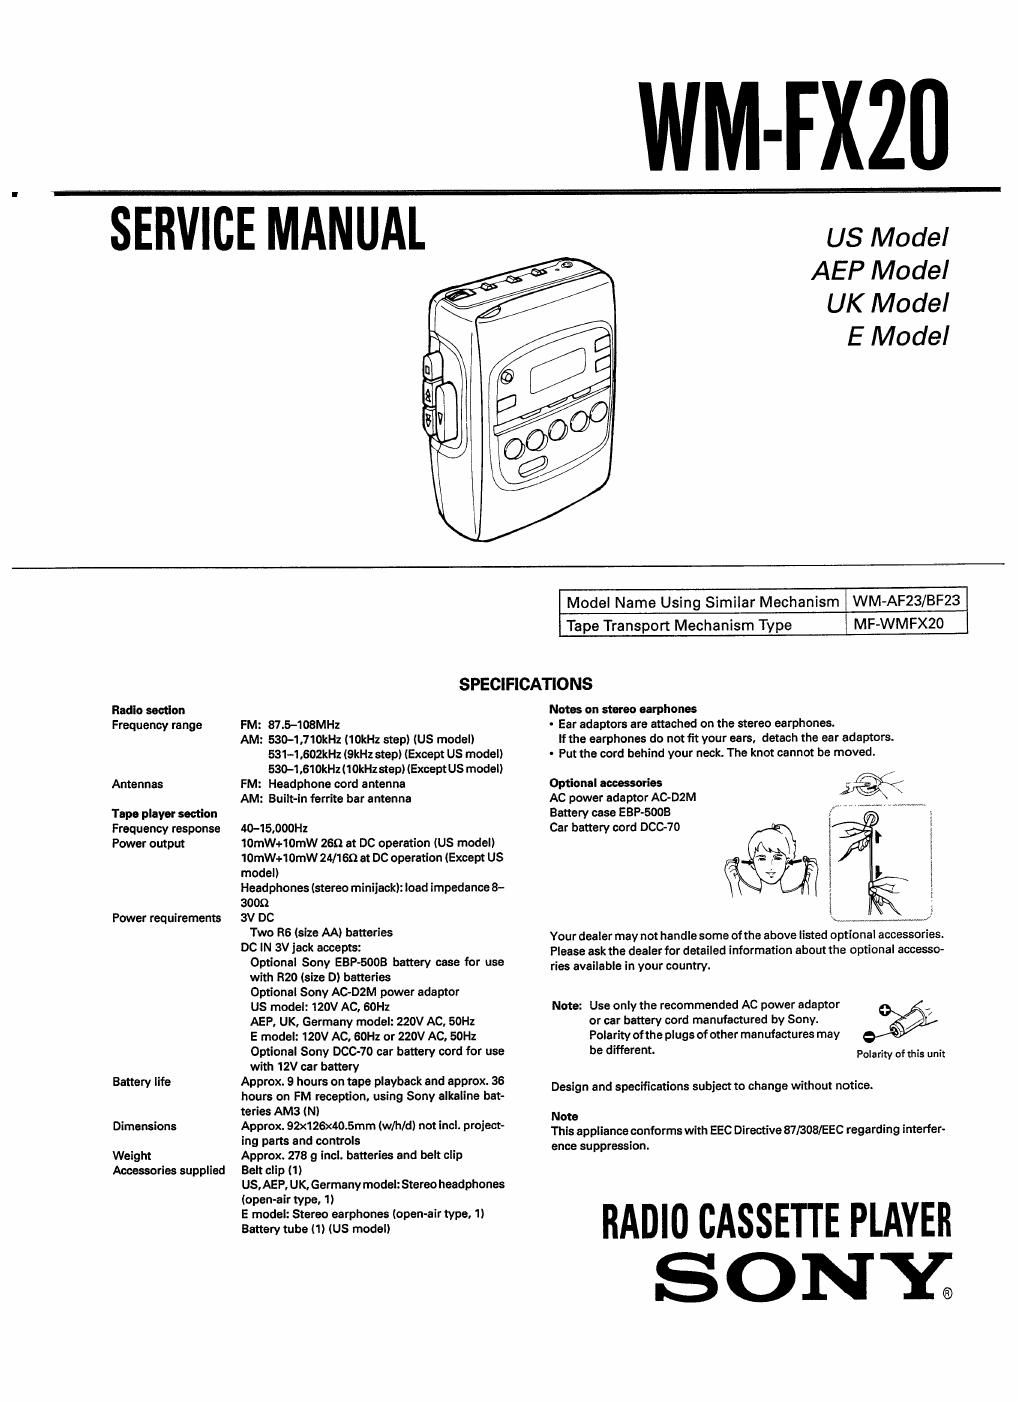 sony wm fx 20 service manual